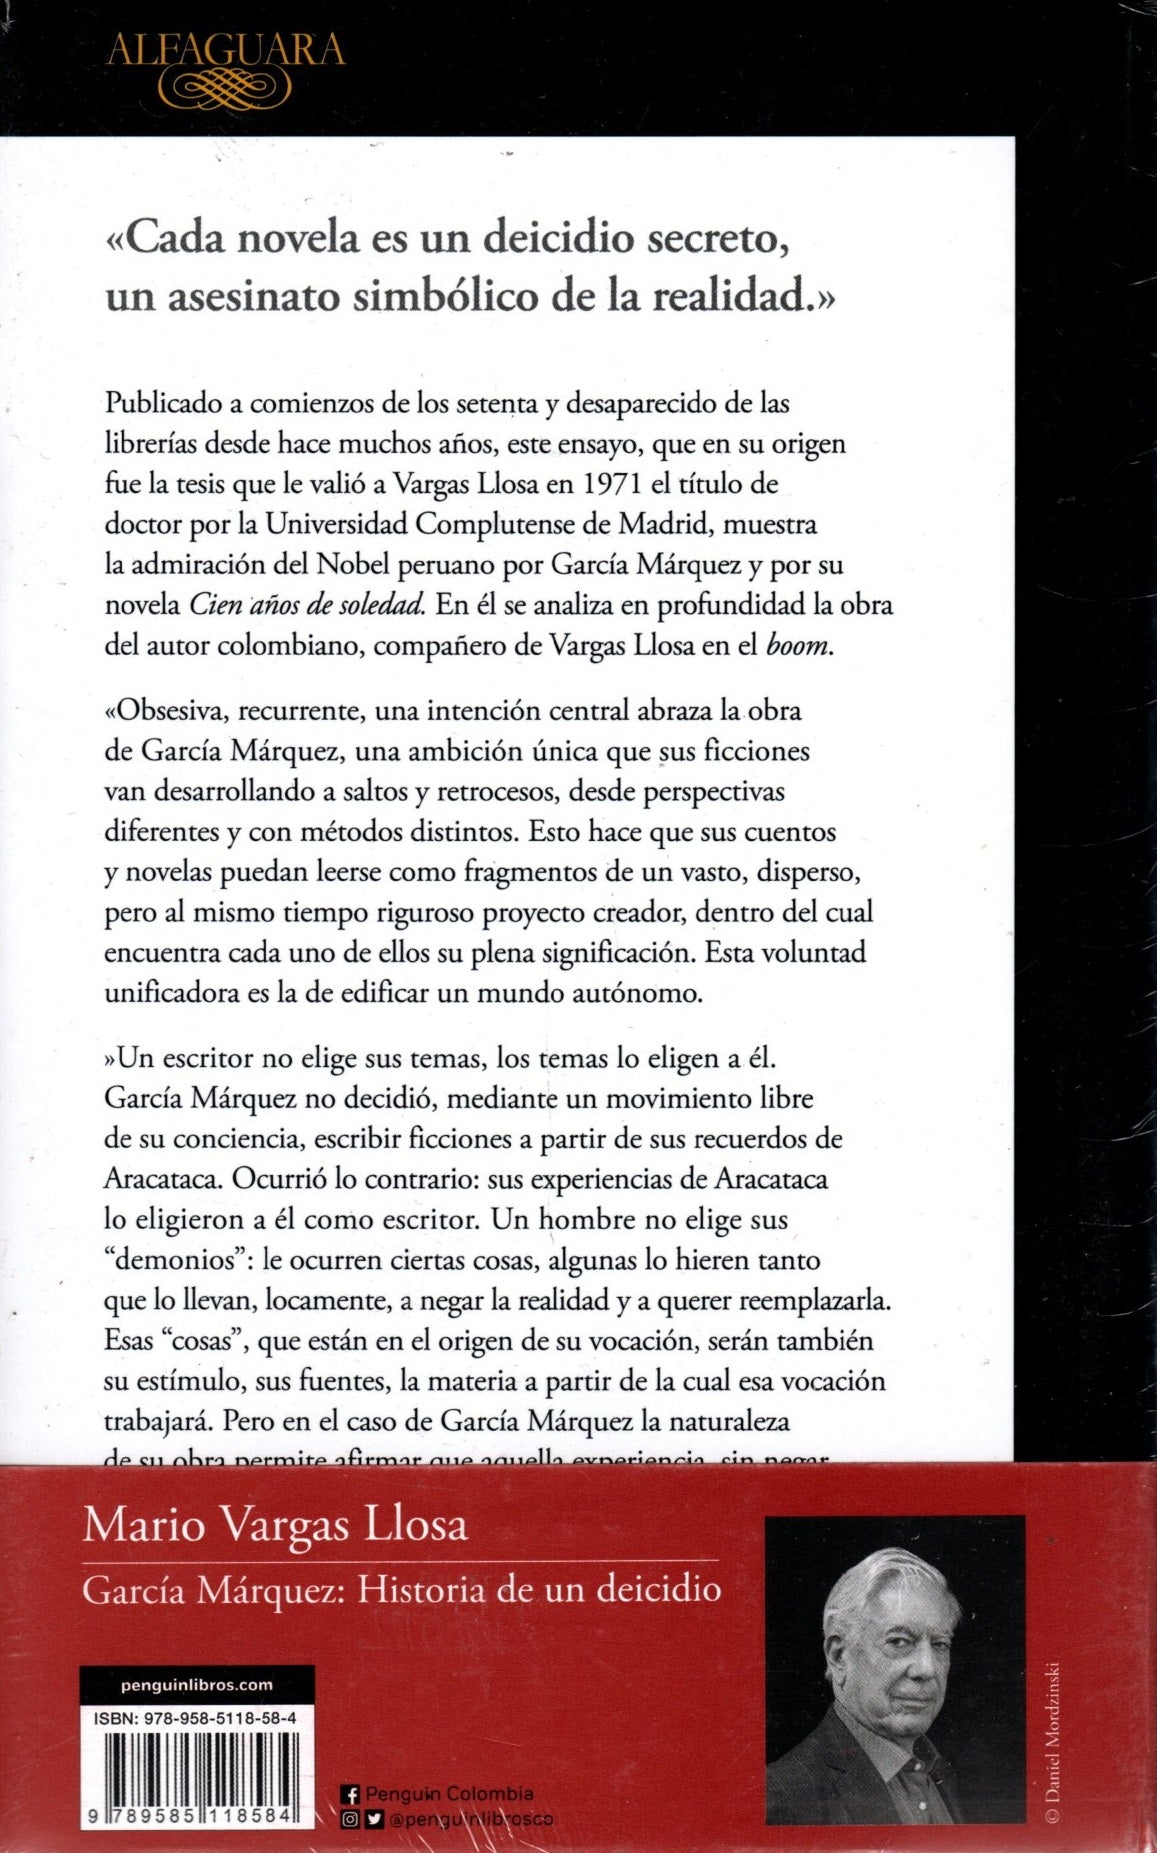 Libro Mario Vargas Llosa, García Márquez - Historia De Un Deicidio